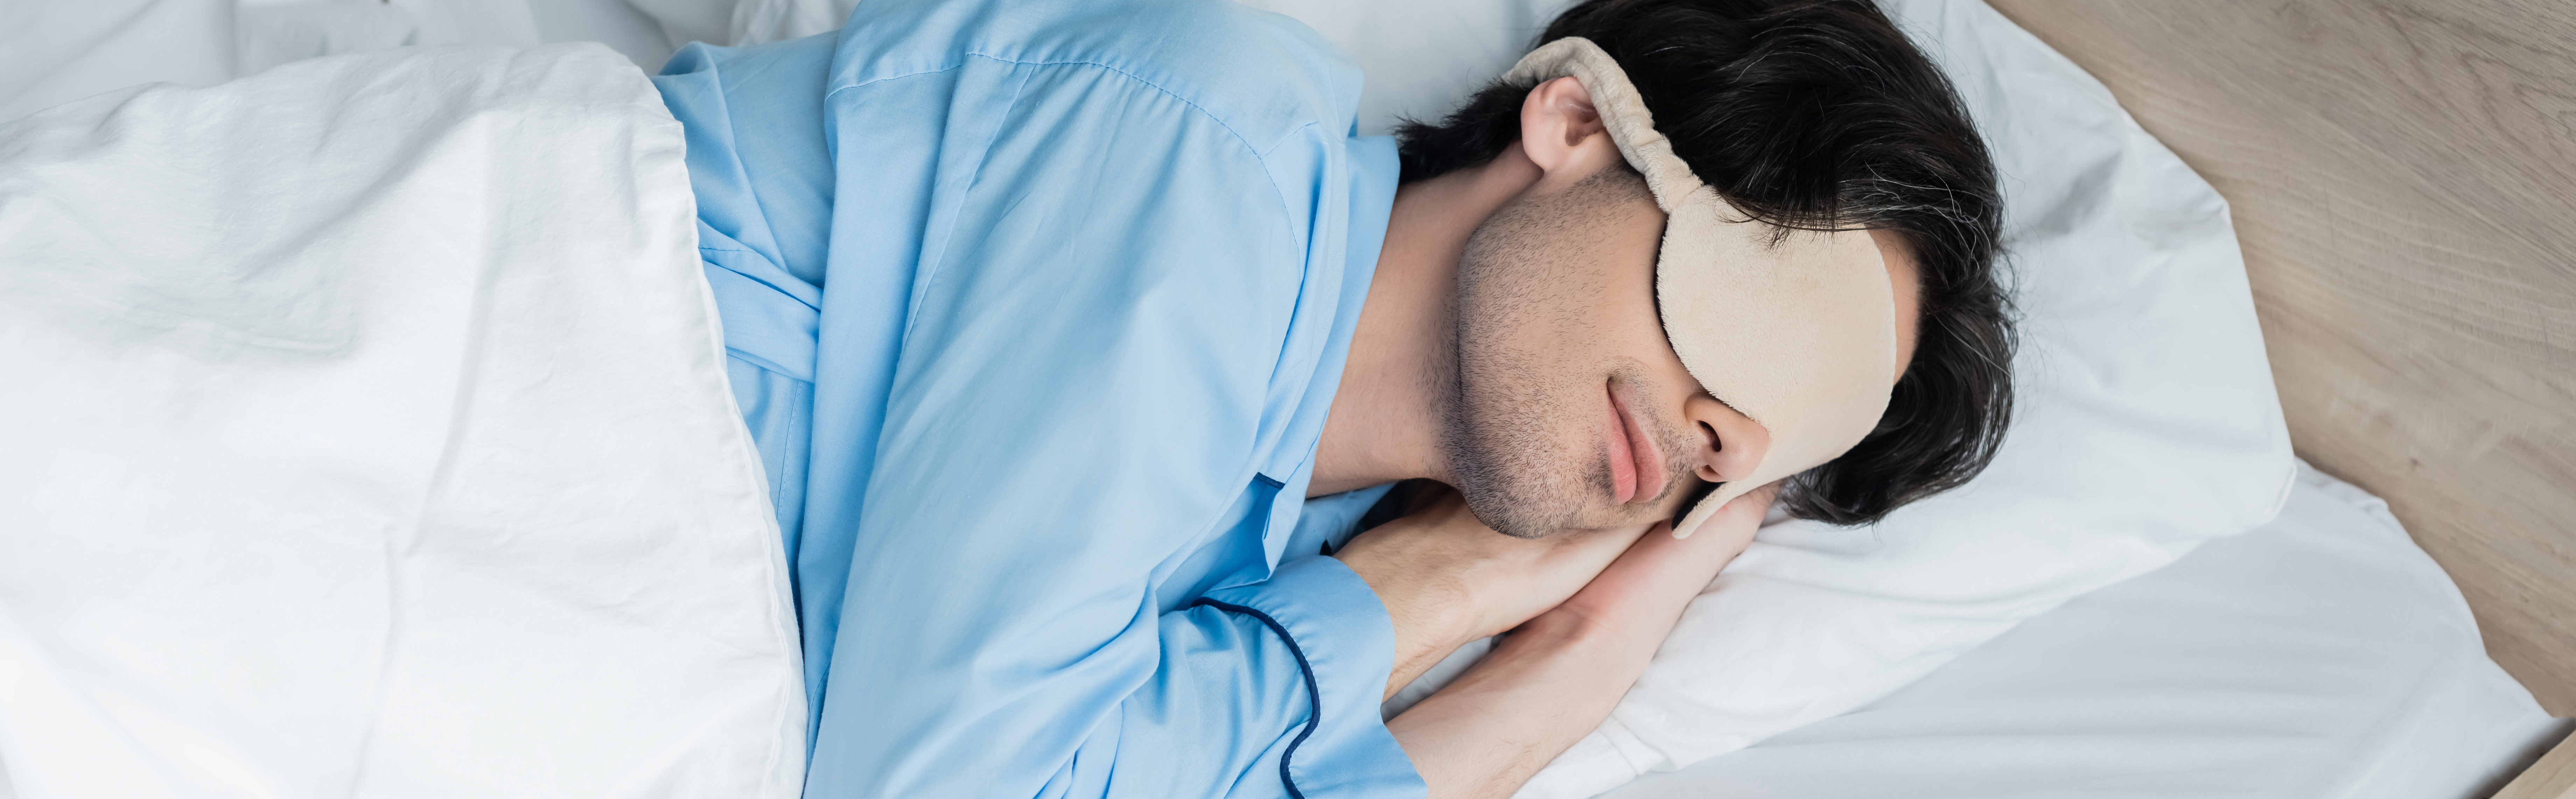 4 warnsignale mit denen ihr körper um mehr schlaf bettelt.jpg